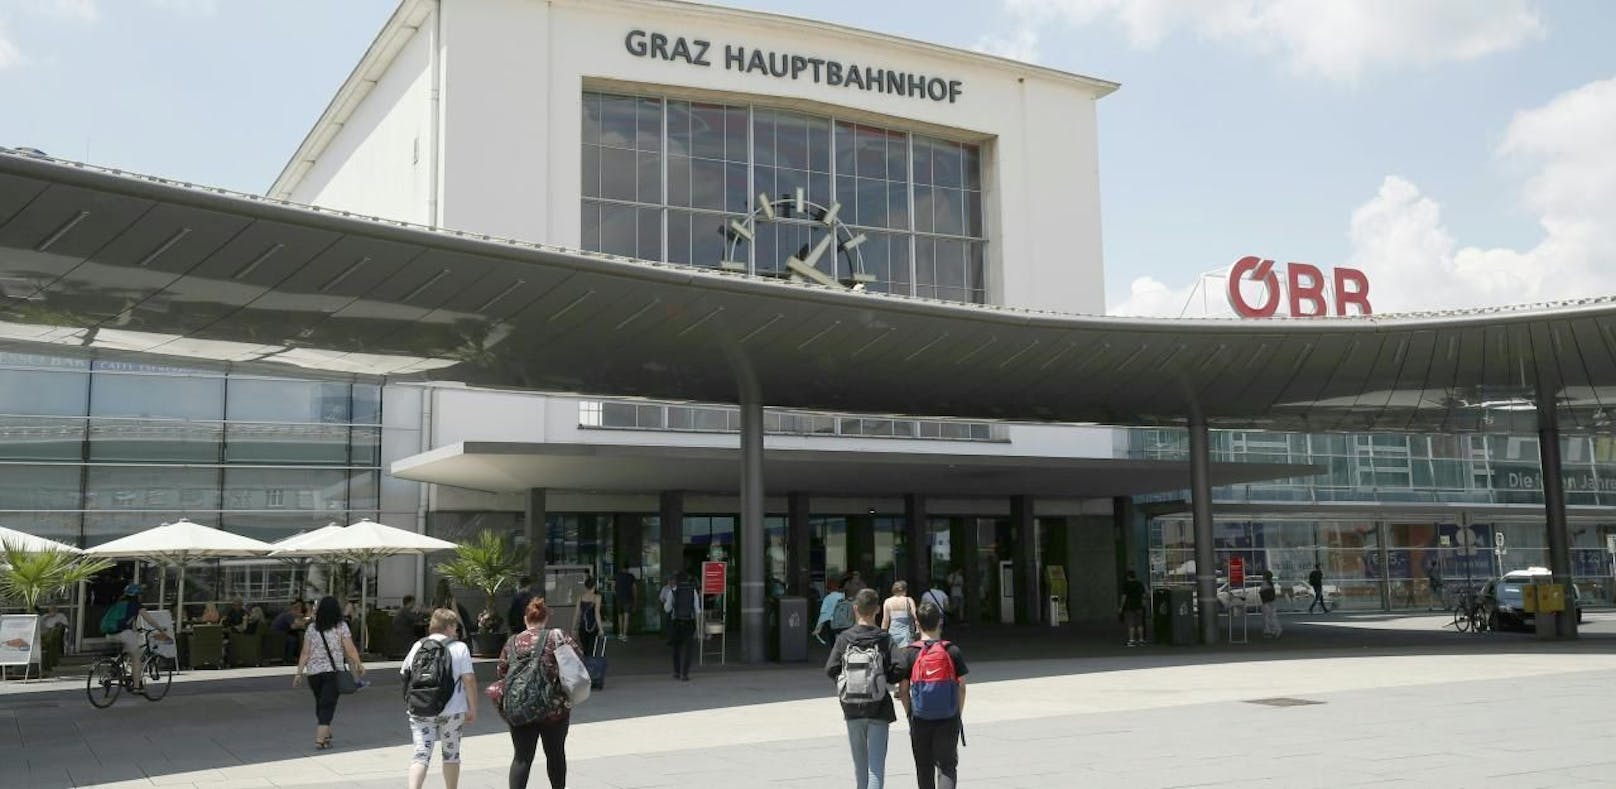 Eine Außenaufnahme des Grazer Hauptbahnhofs.